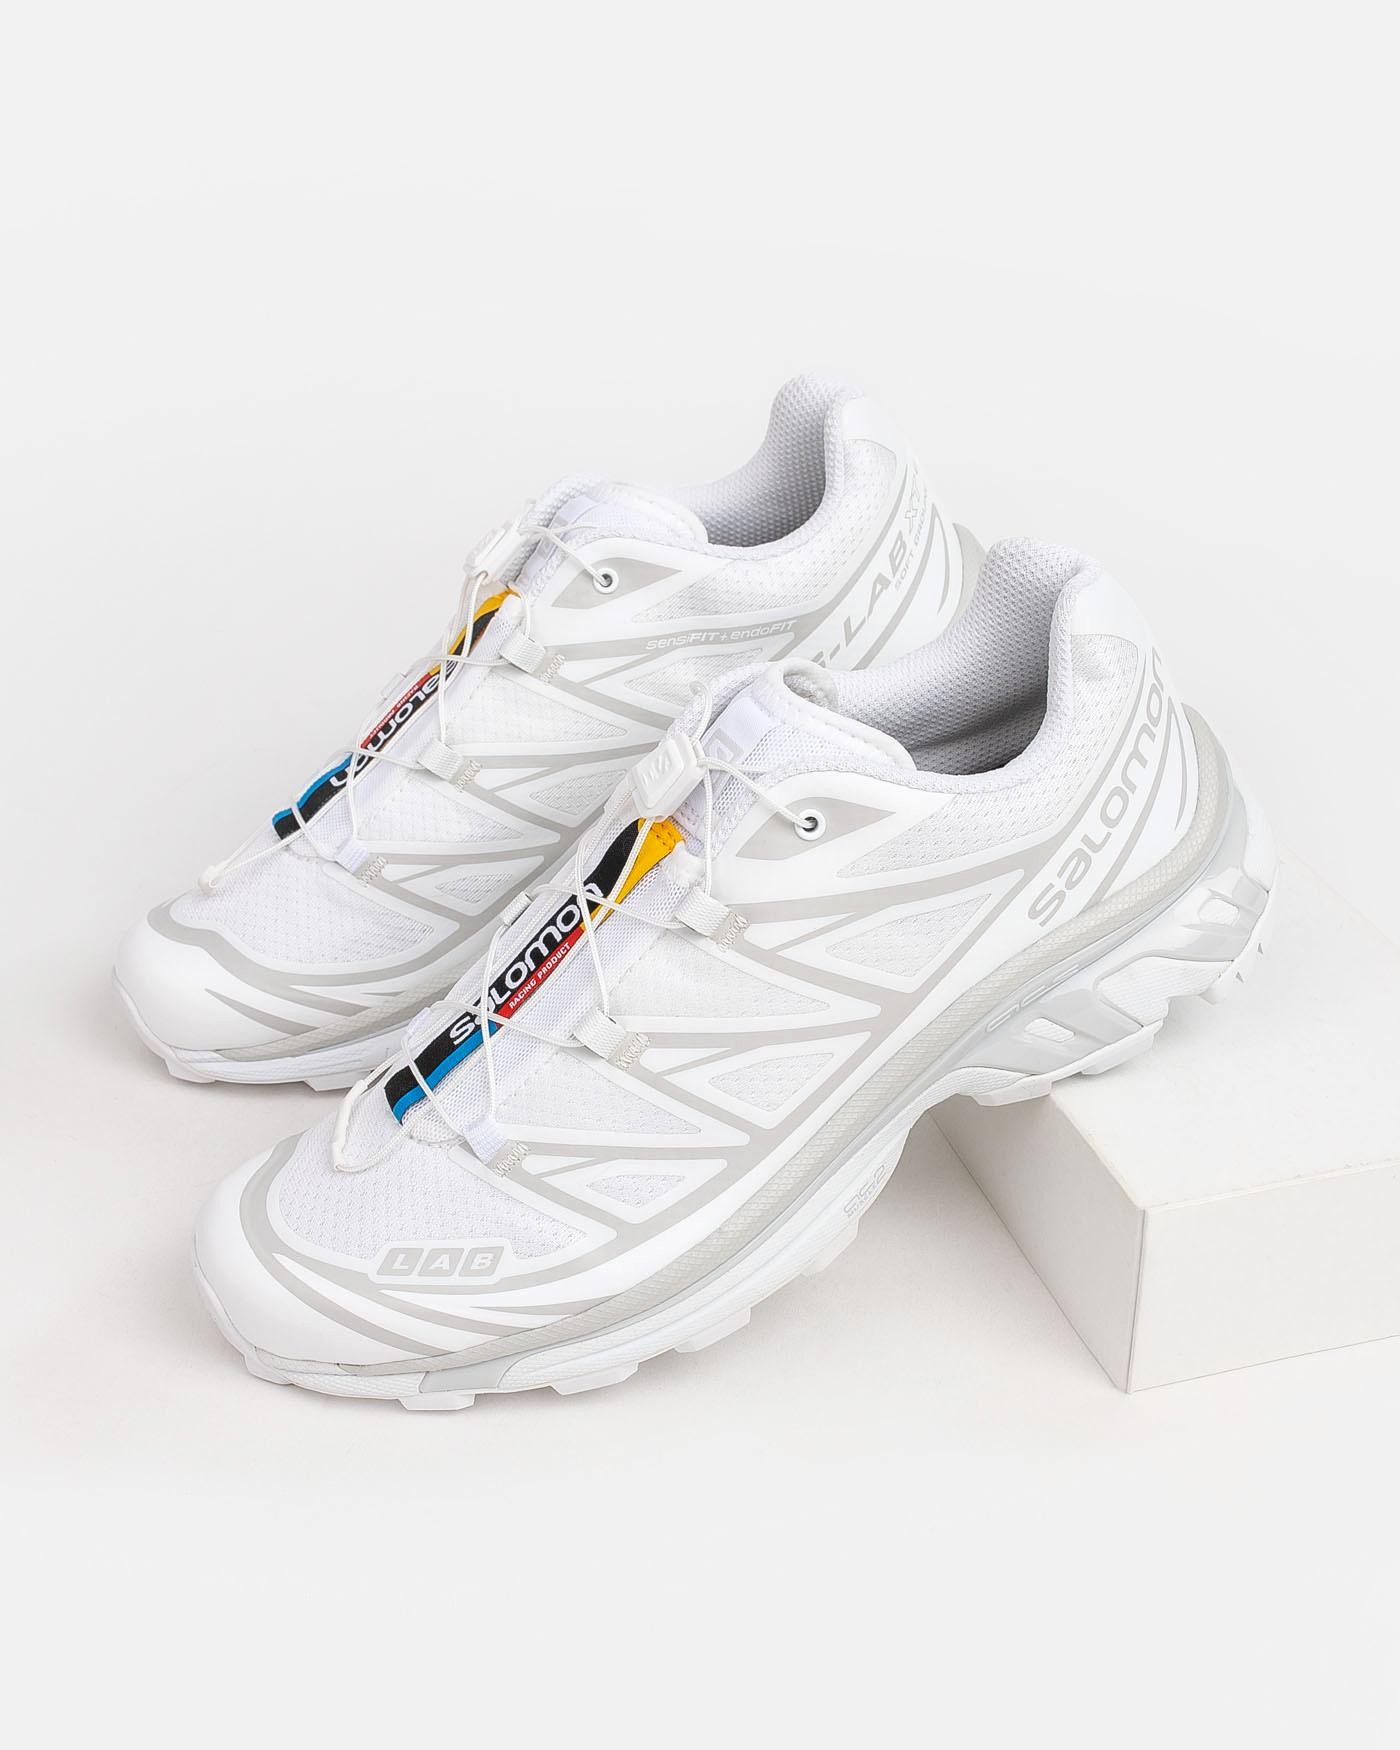 salomon-zapatillas-xt-6-lunar-rock-sneakers-white-blancas-6